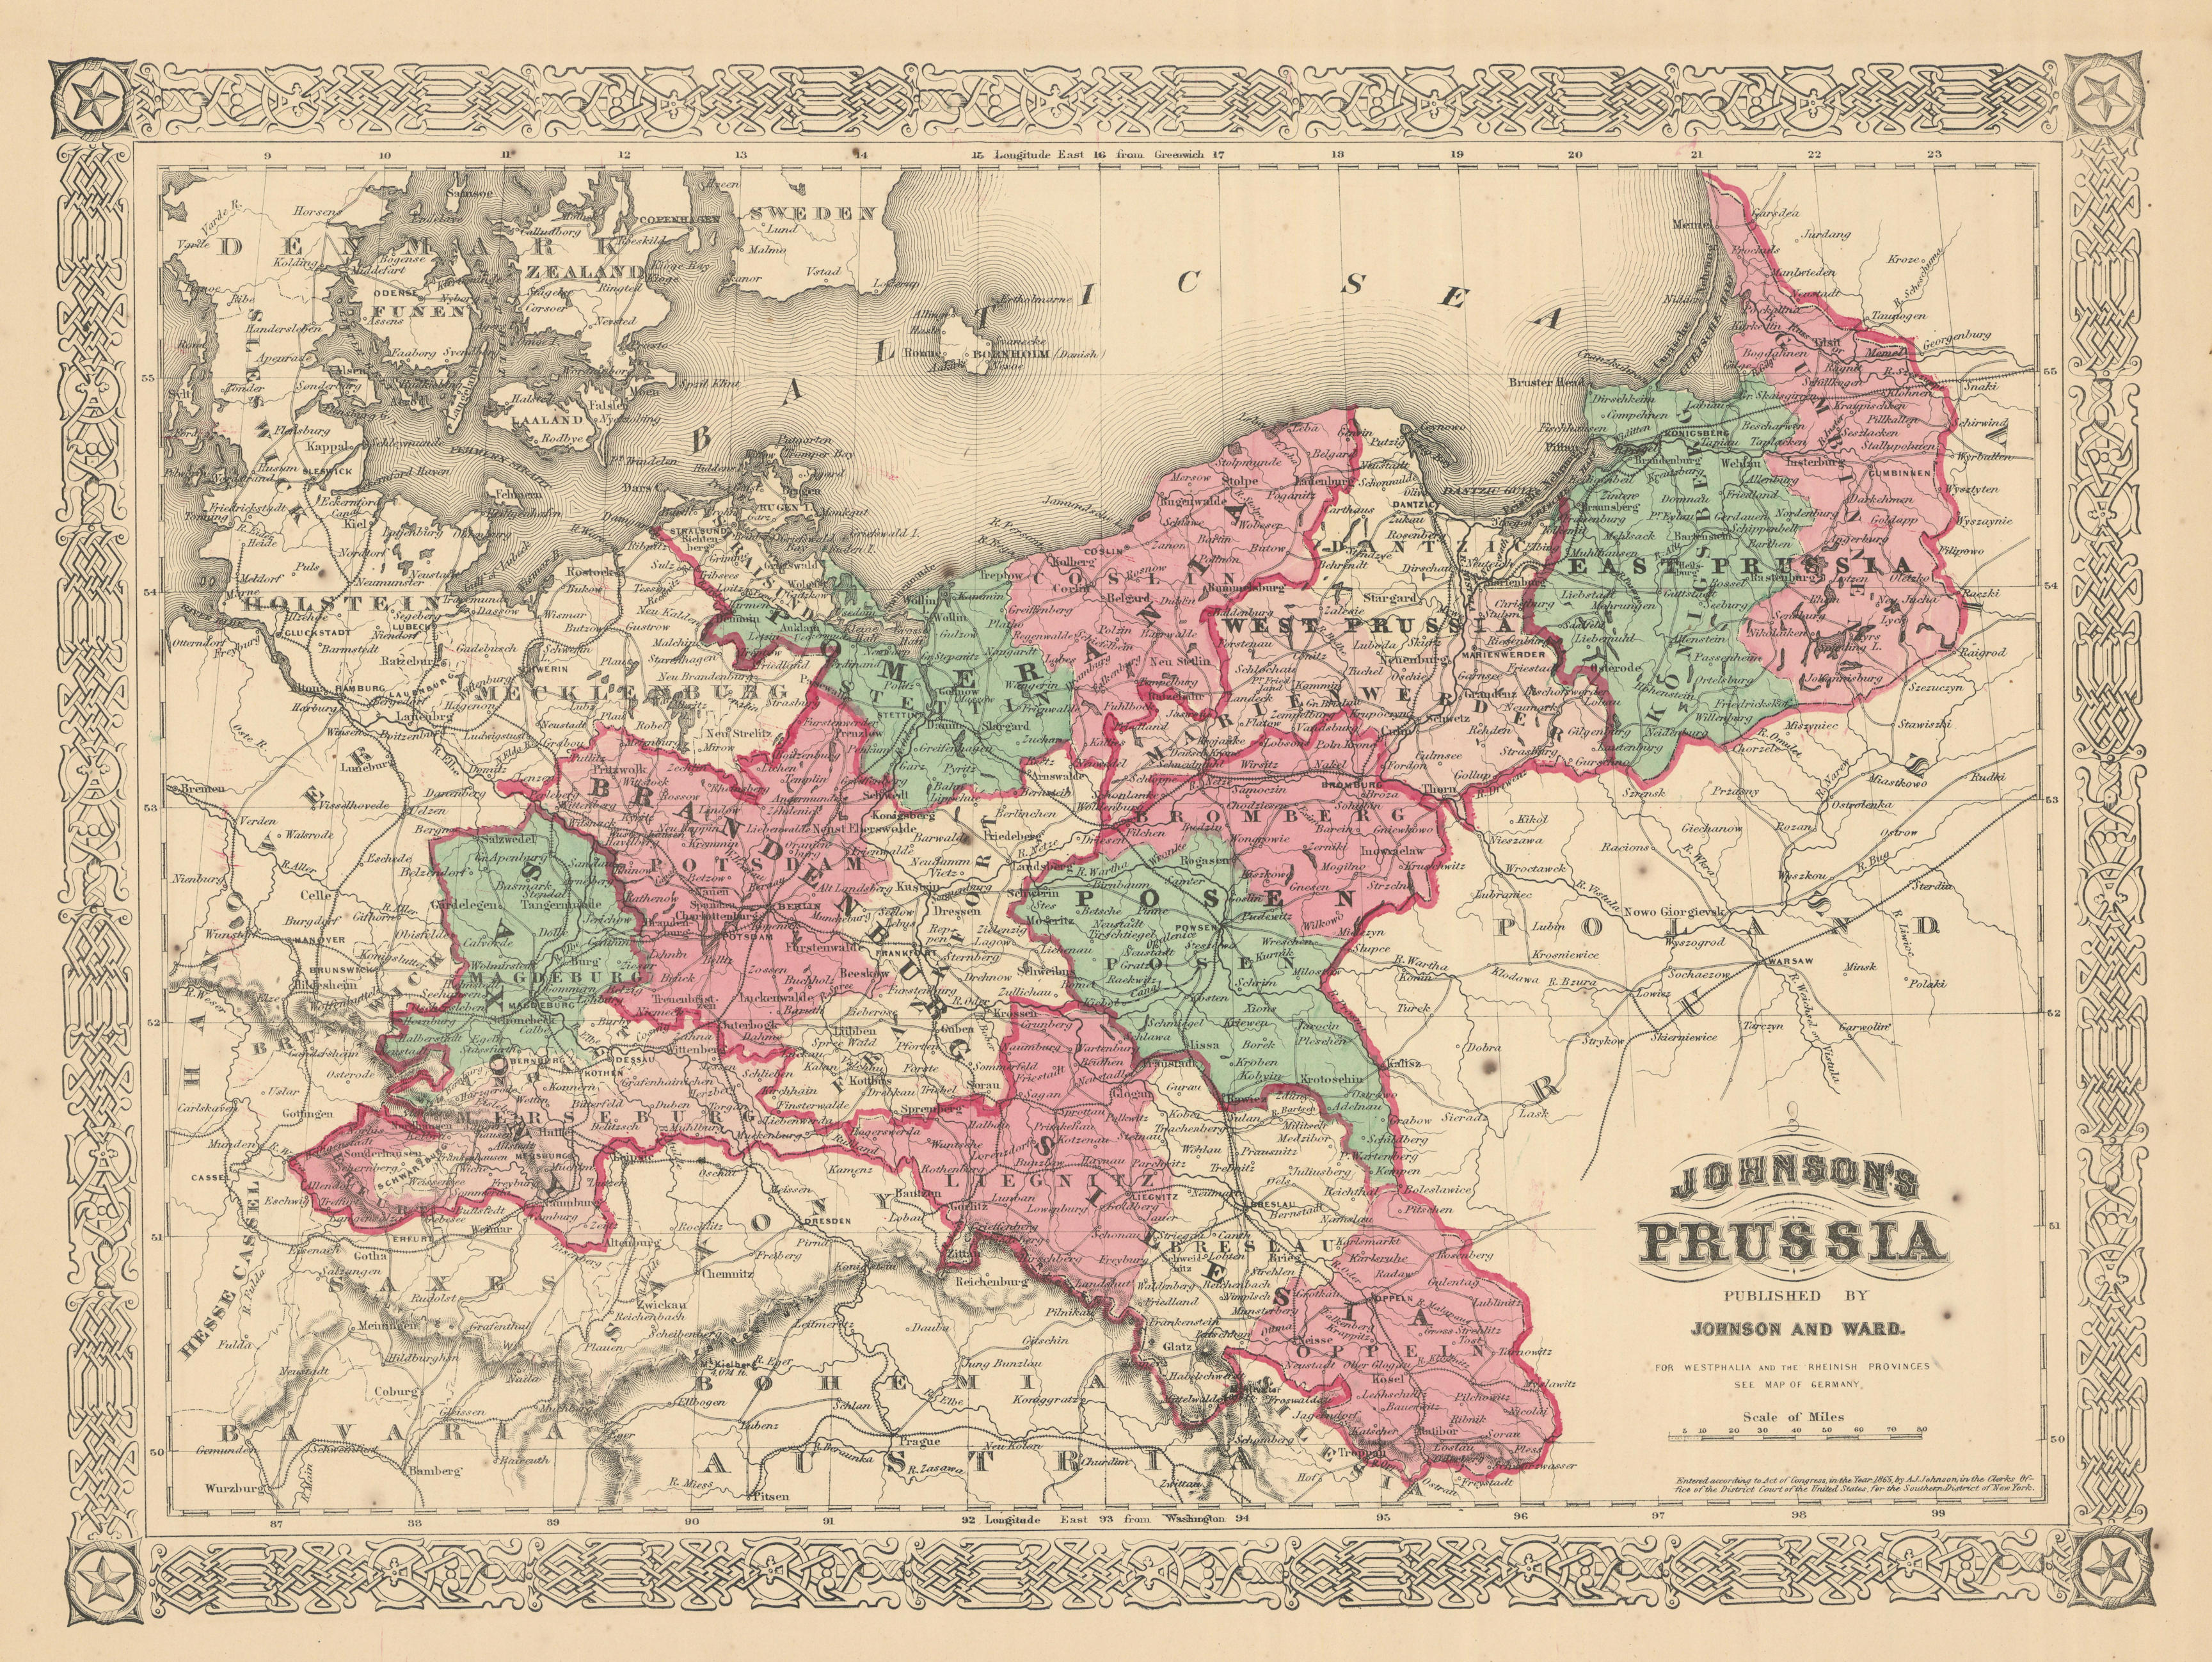 Associate Product Johnson's Prussia. Saxony Silesia Brandenburg Pomerania Posen Poland 1866 map